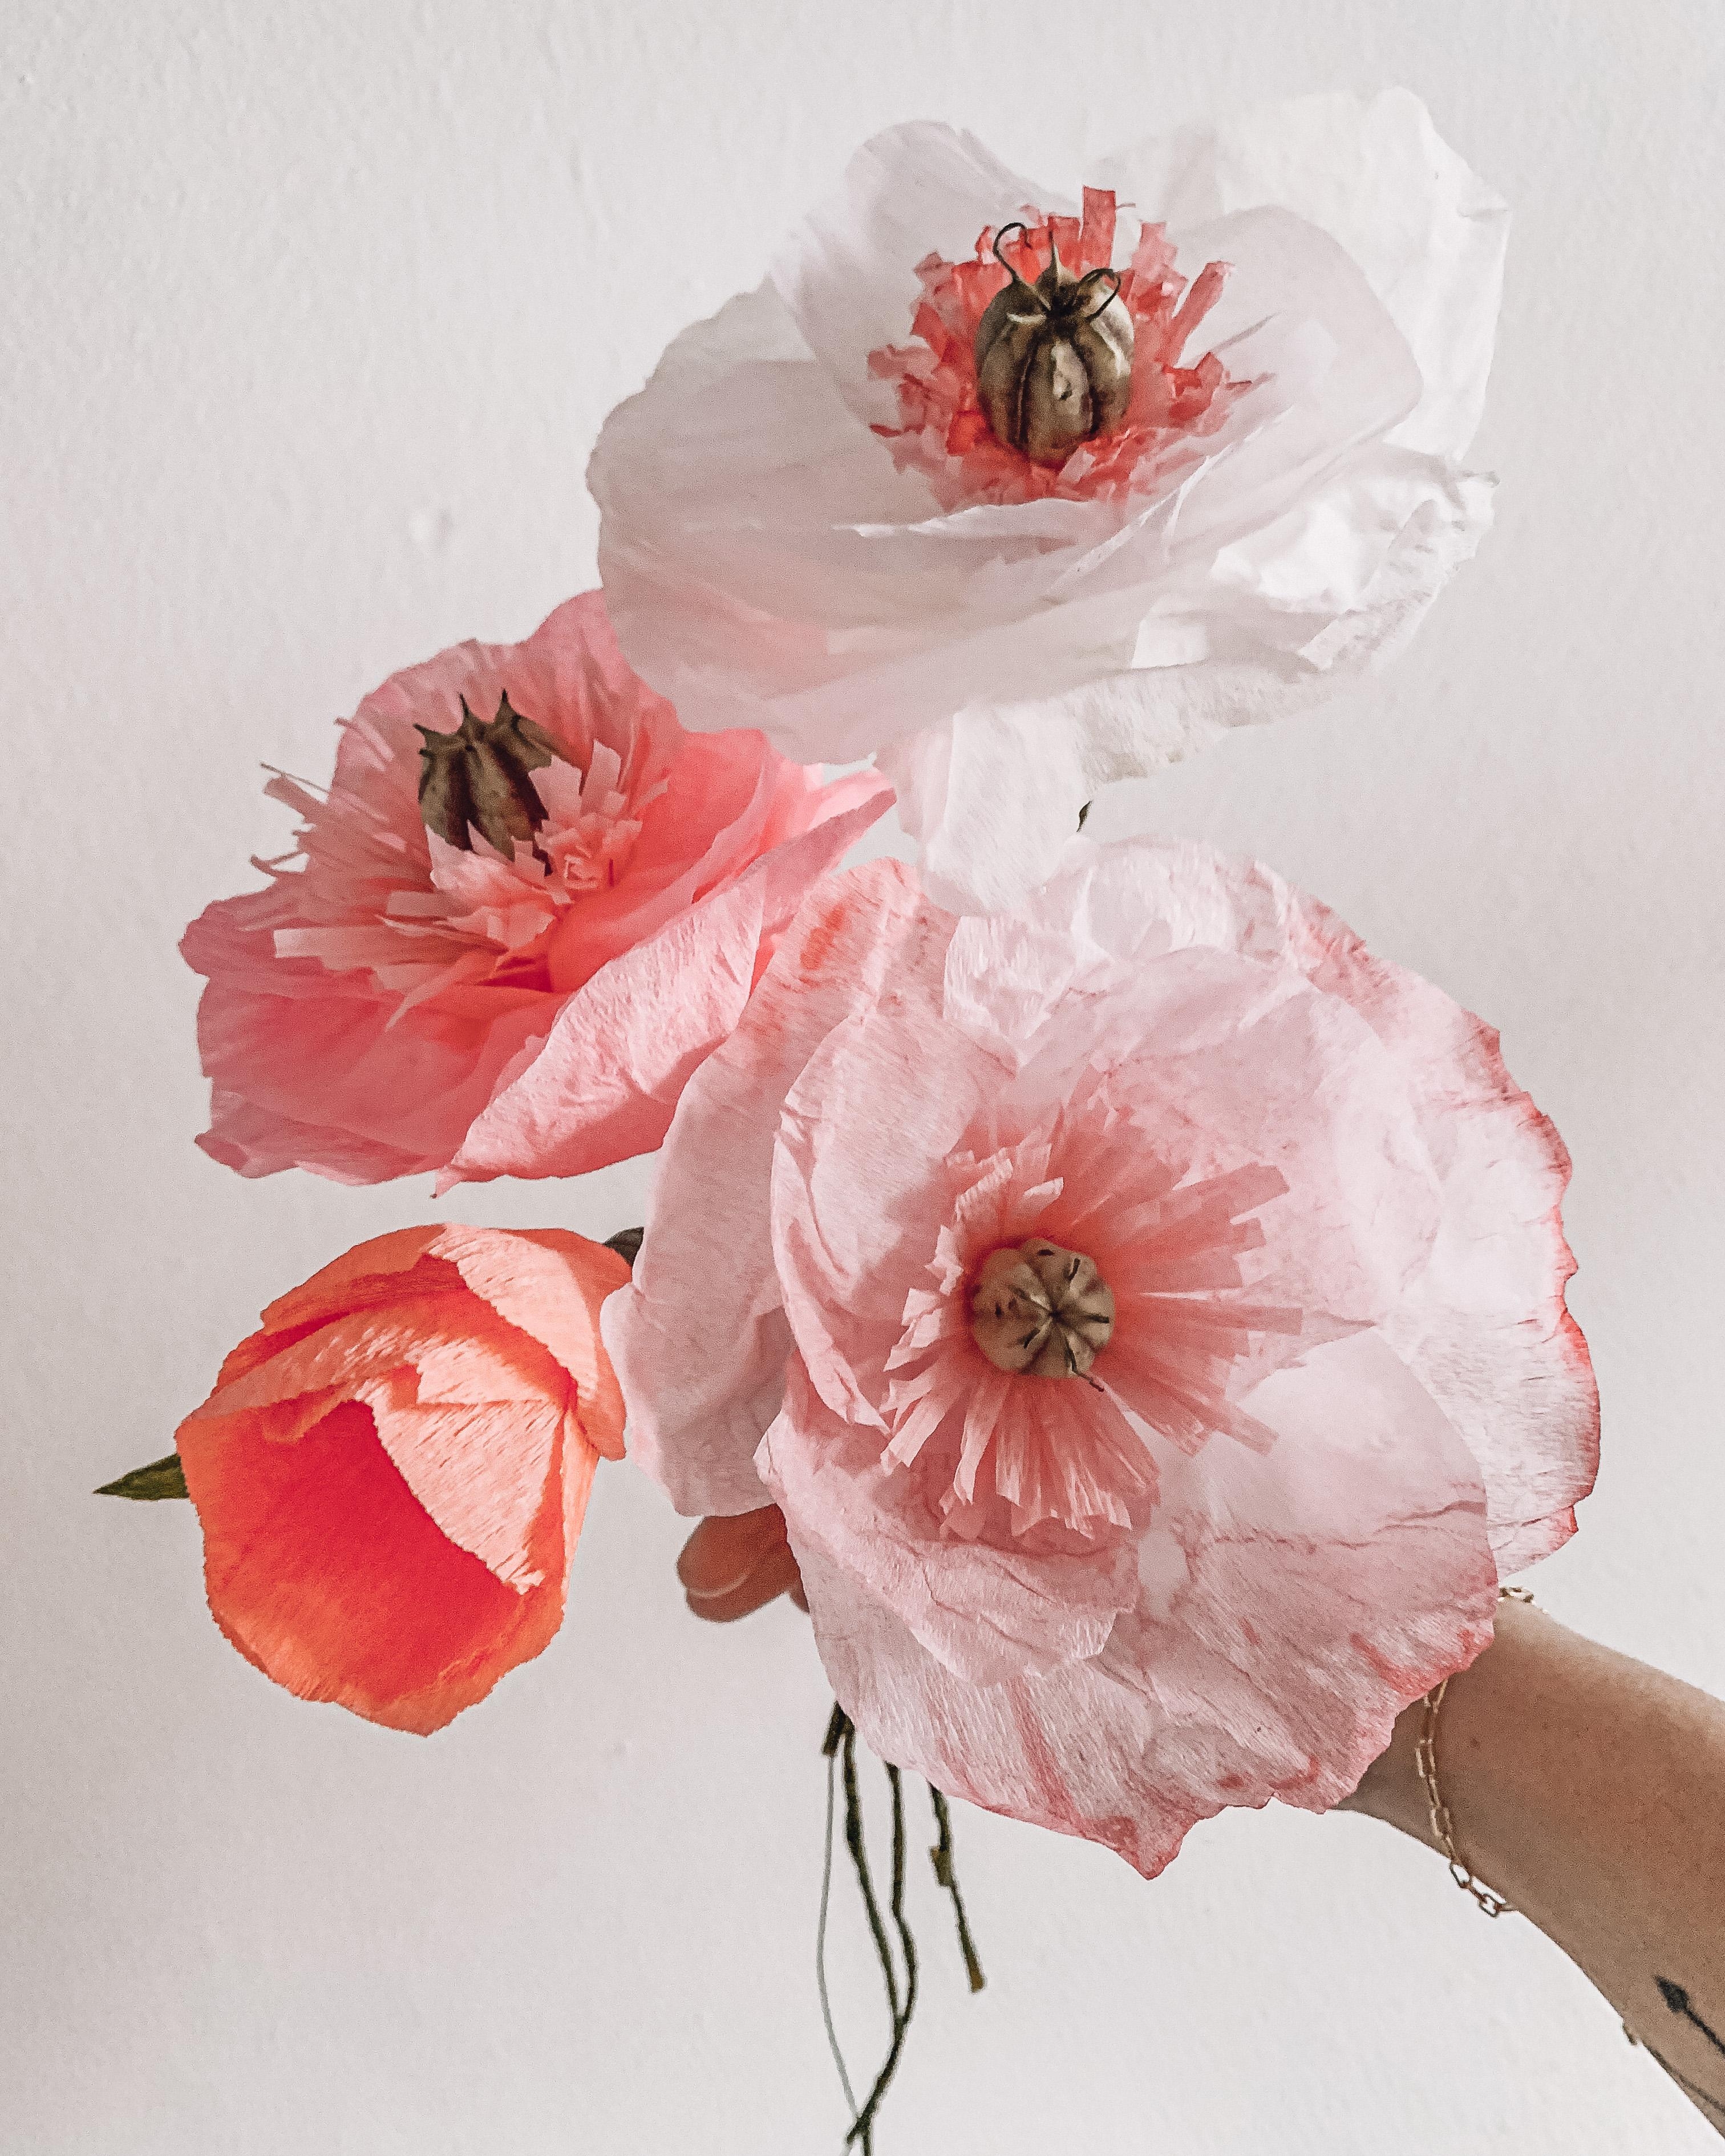 Gestern ein paar Papierblumen gebastelt um ein bißchen Frühlingsgefühle zu verbreiten  🥰🌷 #diy #paperflowers #blumen 